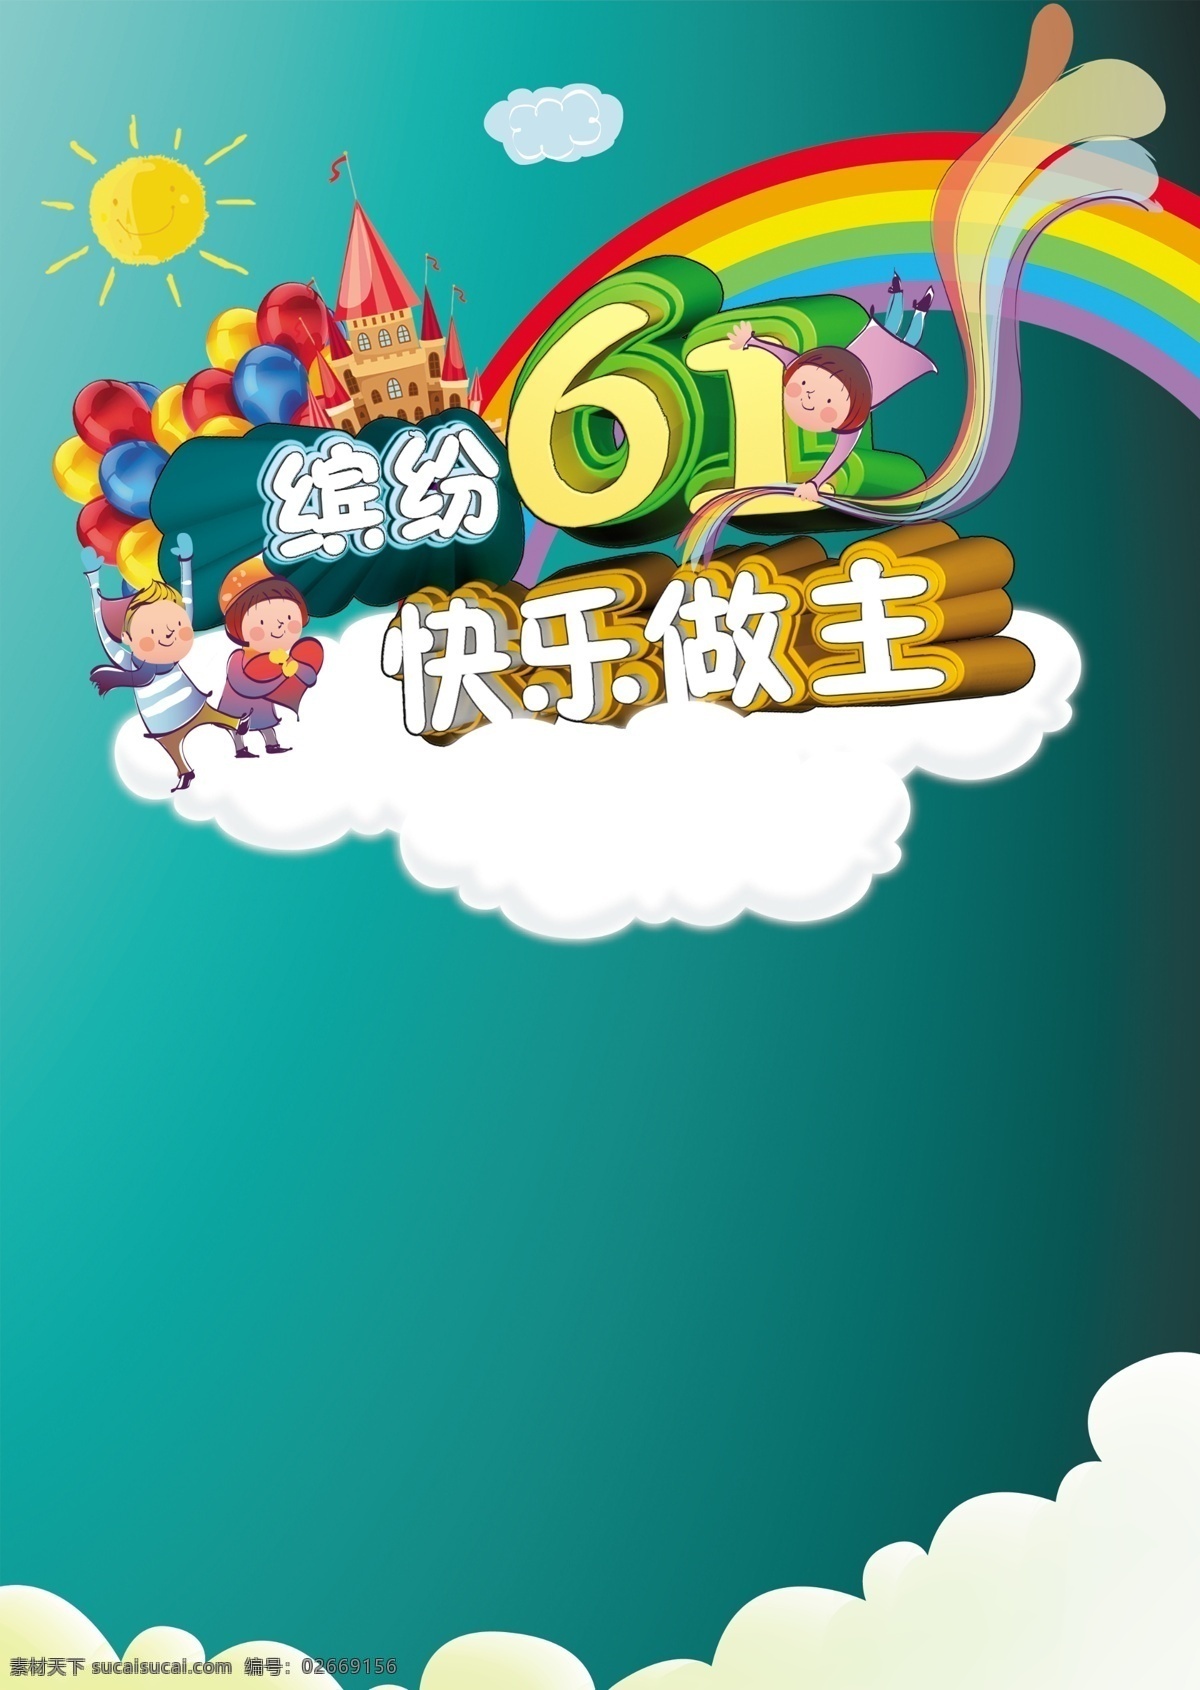 六 快乐 做主 彩虹 城堡 卡通儿童 蓝色 六一 七彩 气球 太阳 云 psd源文件